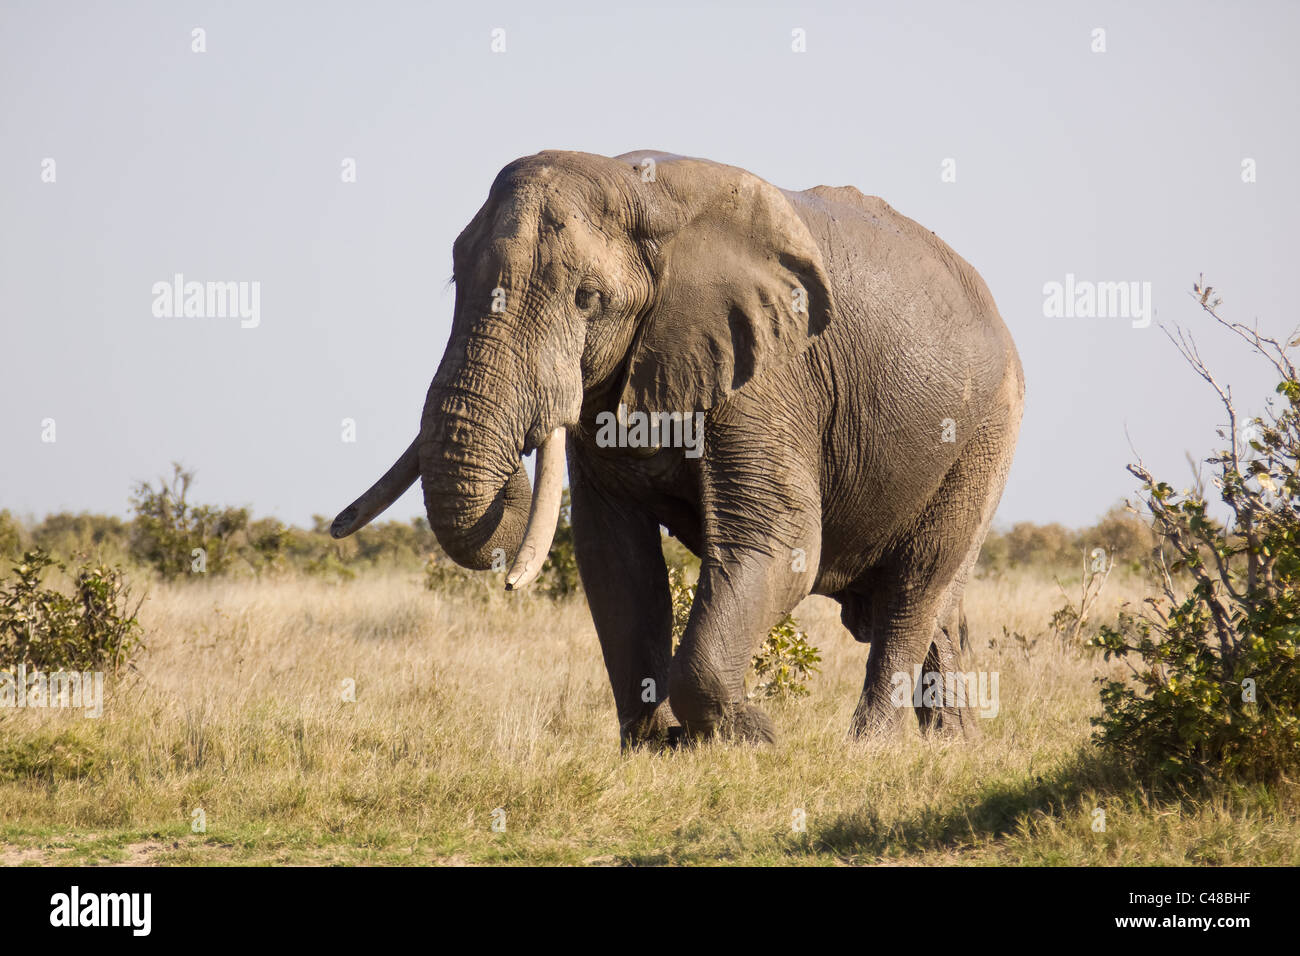 Elefant Afrikanischer (Loxodonta africana), im Wasser, Moremi Wildreservat, Botswana, Afrika Foto de stock